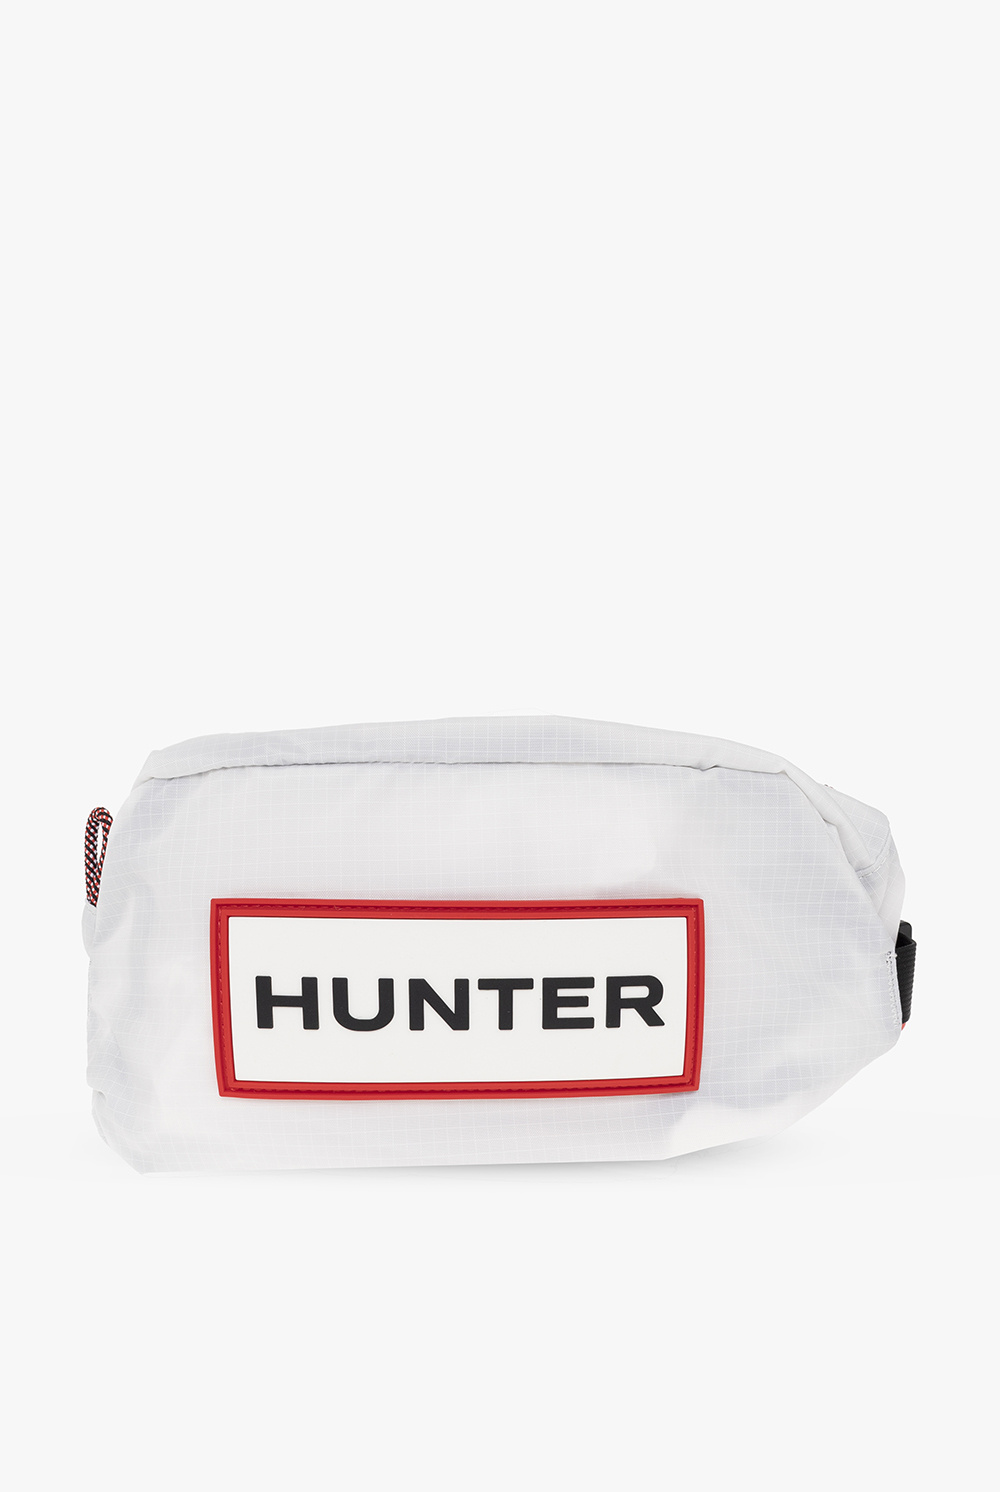 Hunter christian dior green shoulder bag